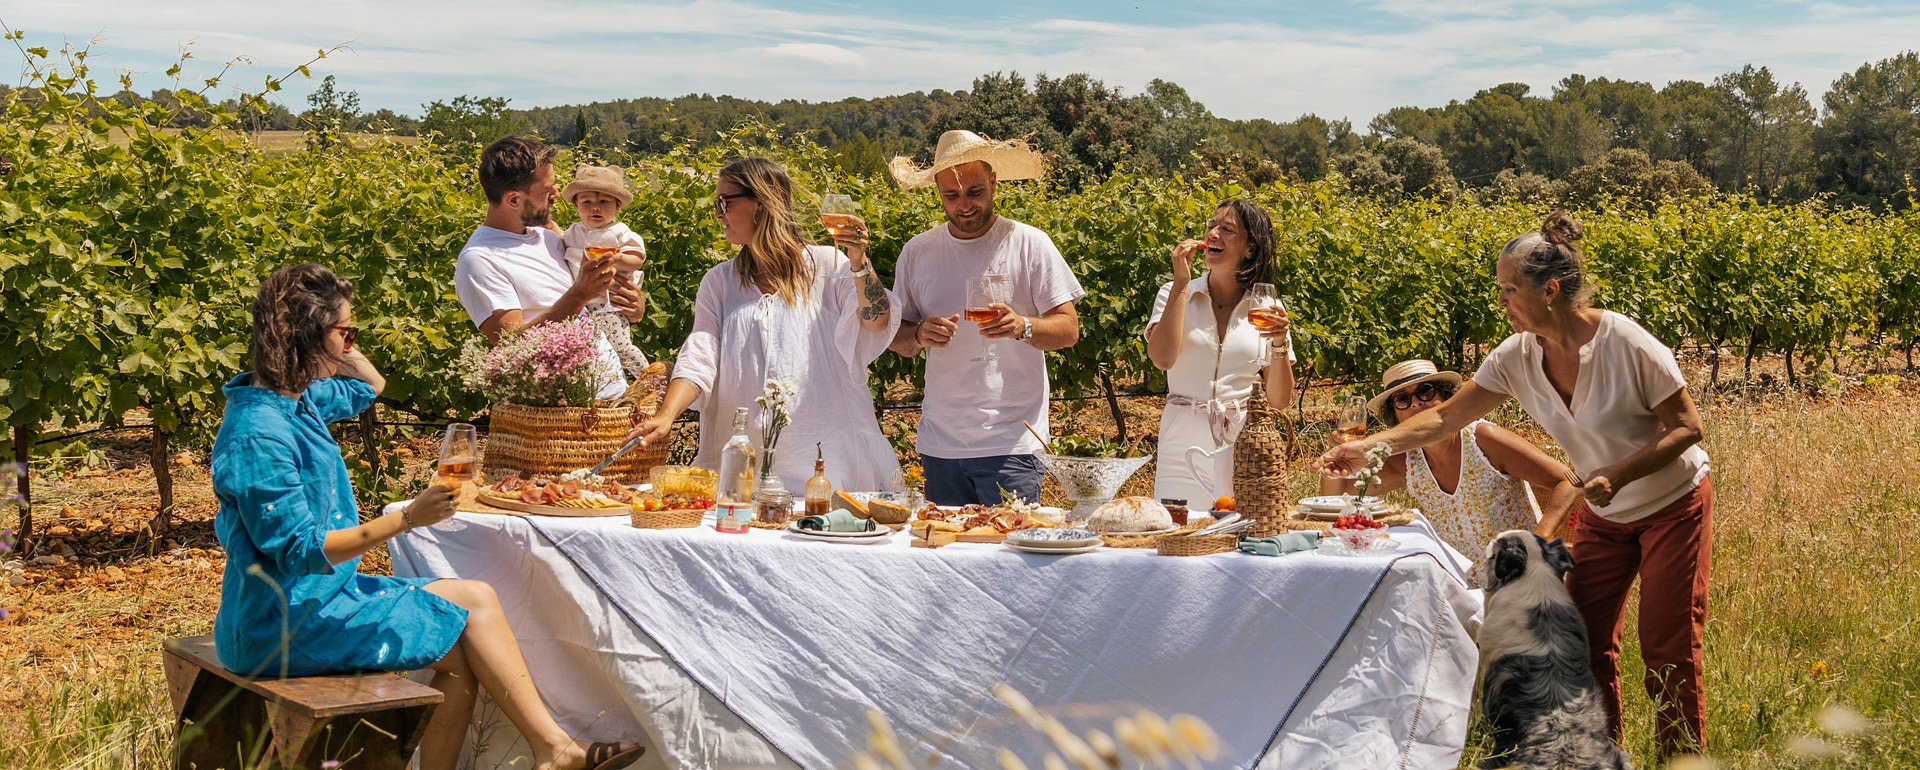 Repas dans les vignes Occitanie © Charlene Pelut / CRTL Occitanie